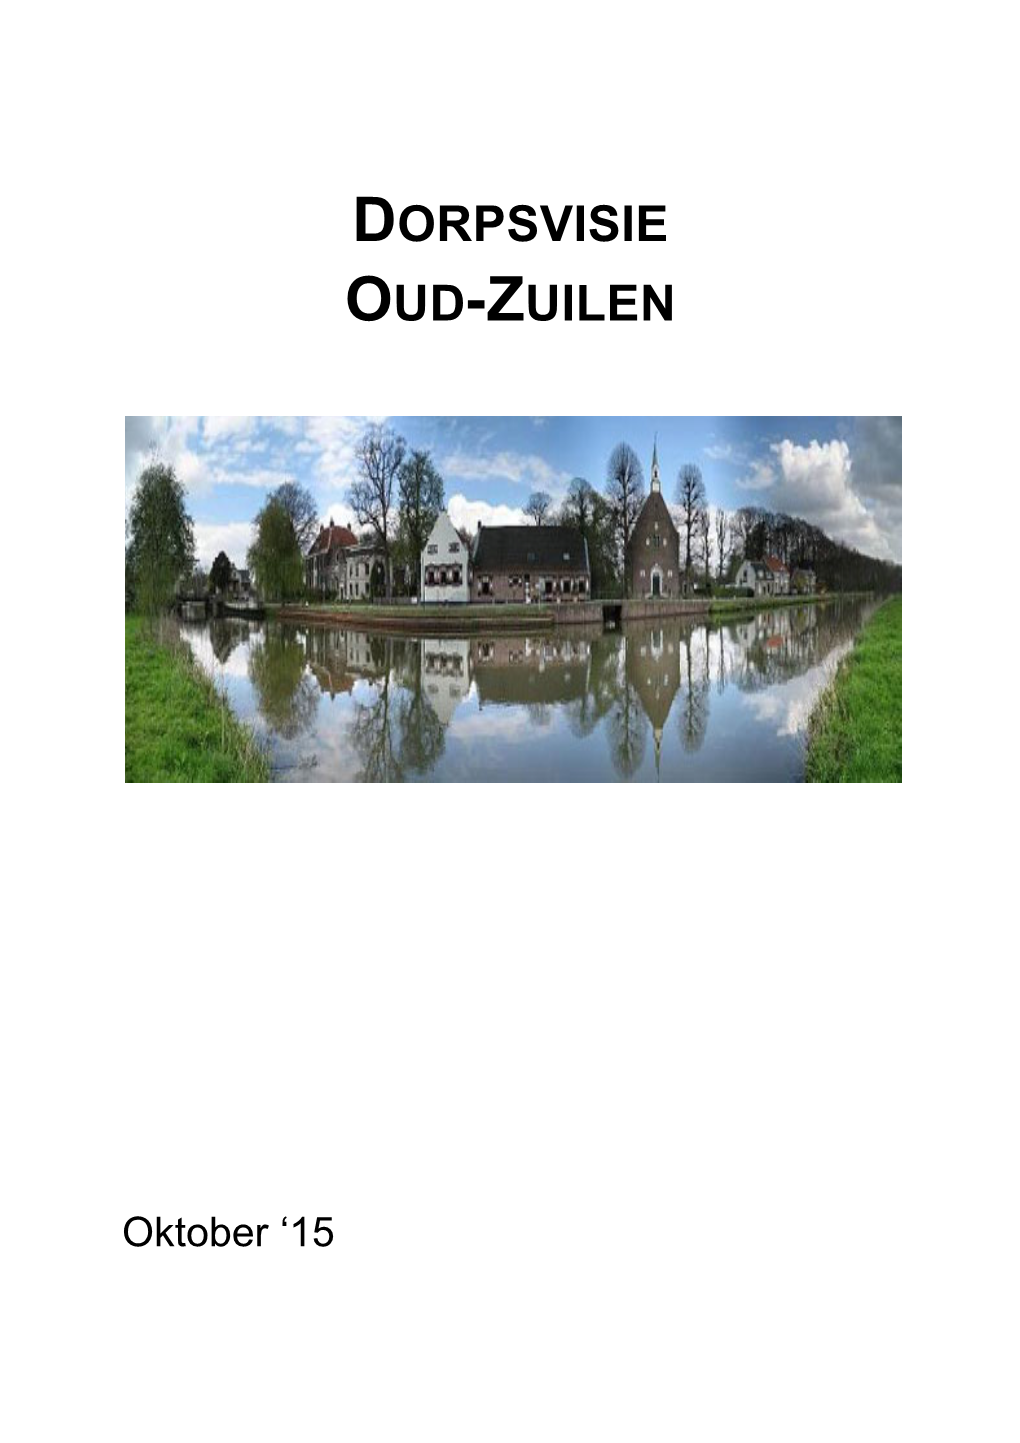 Dorpsvisie Oud-Zuilen